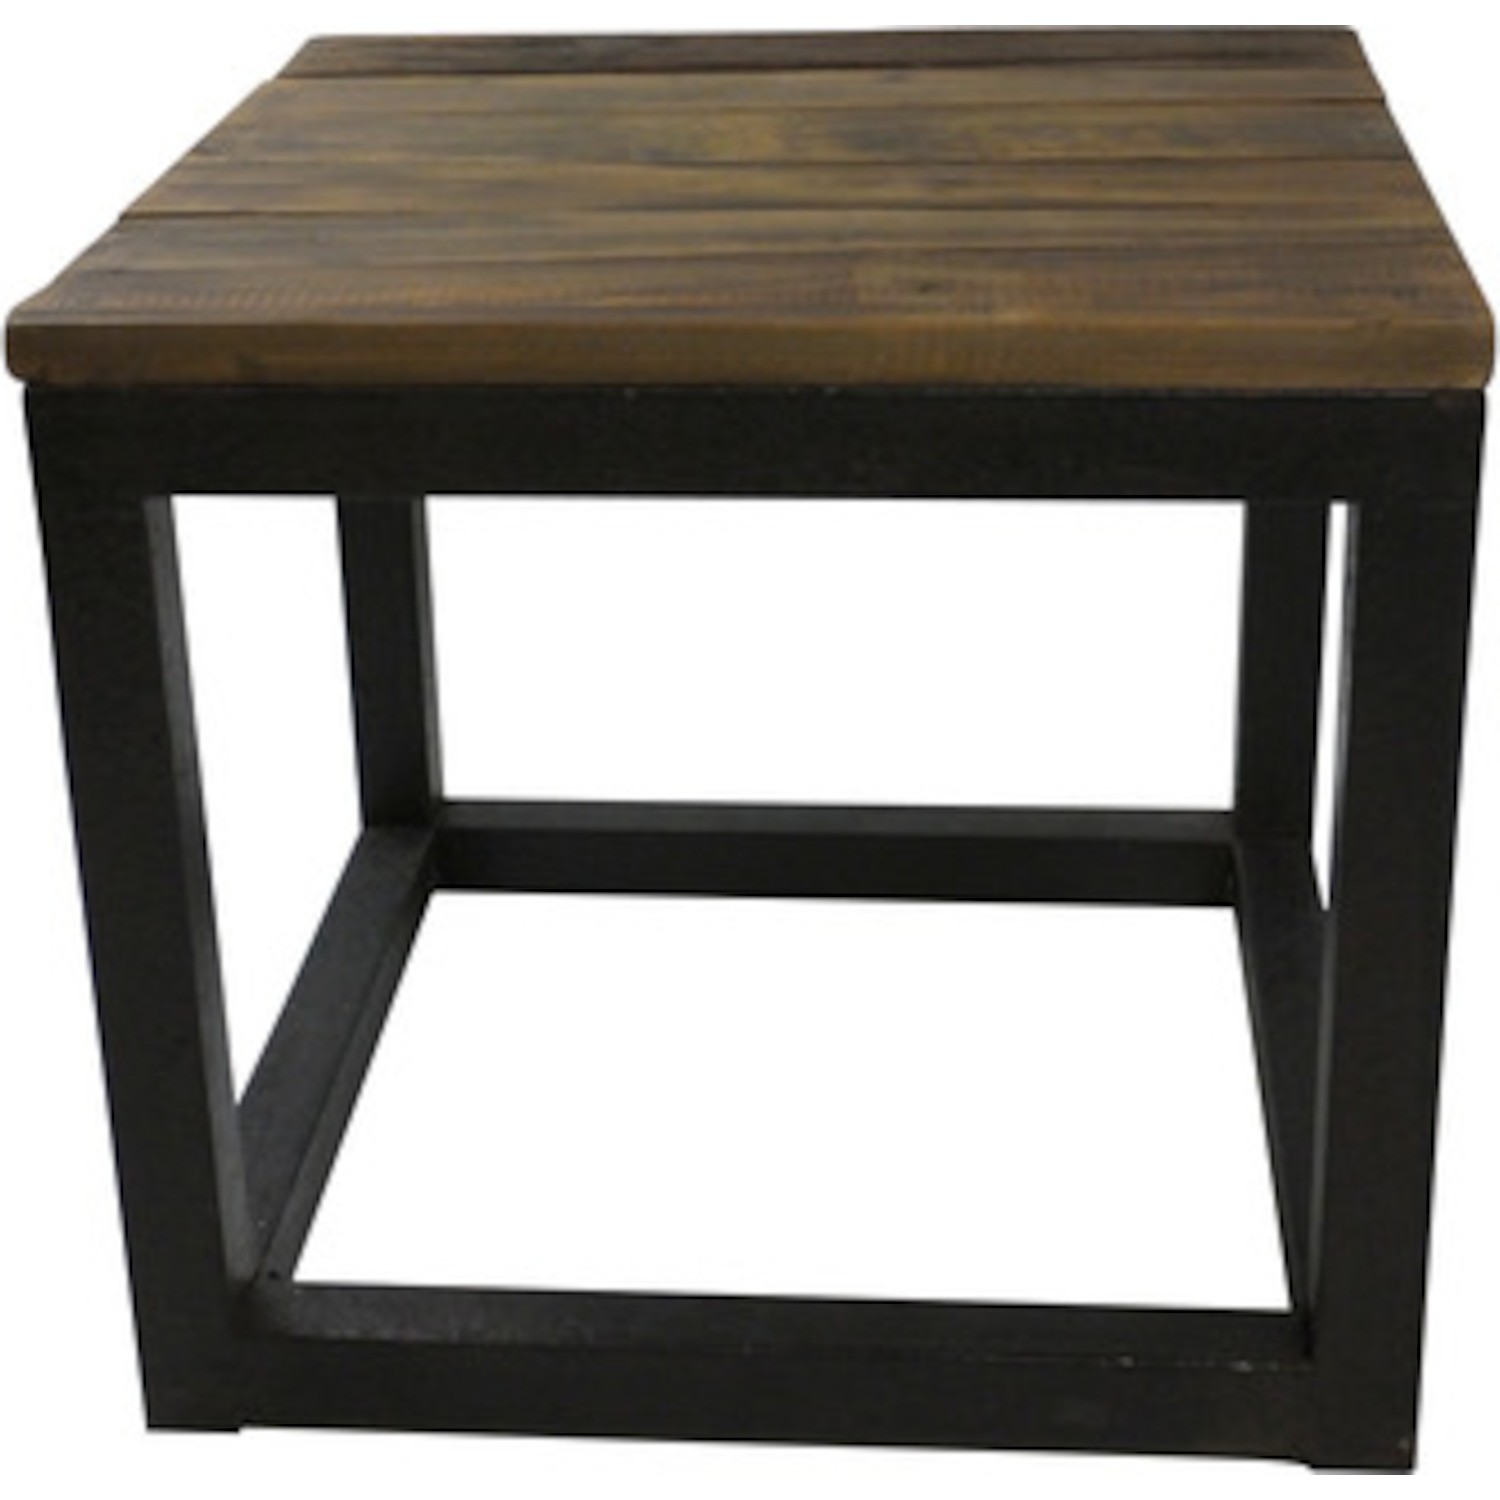 Table basse carrée bois 60x60